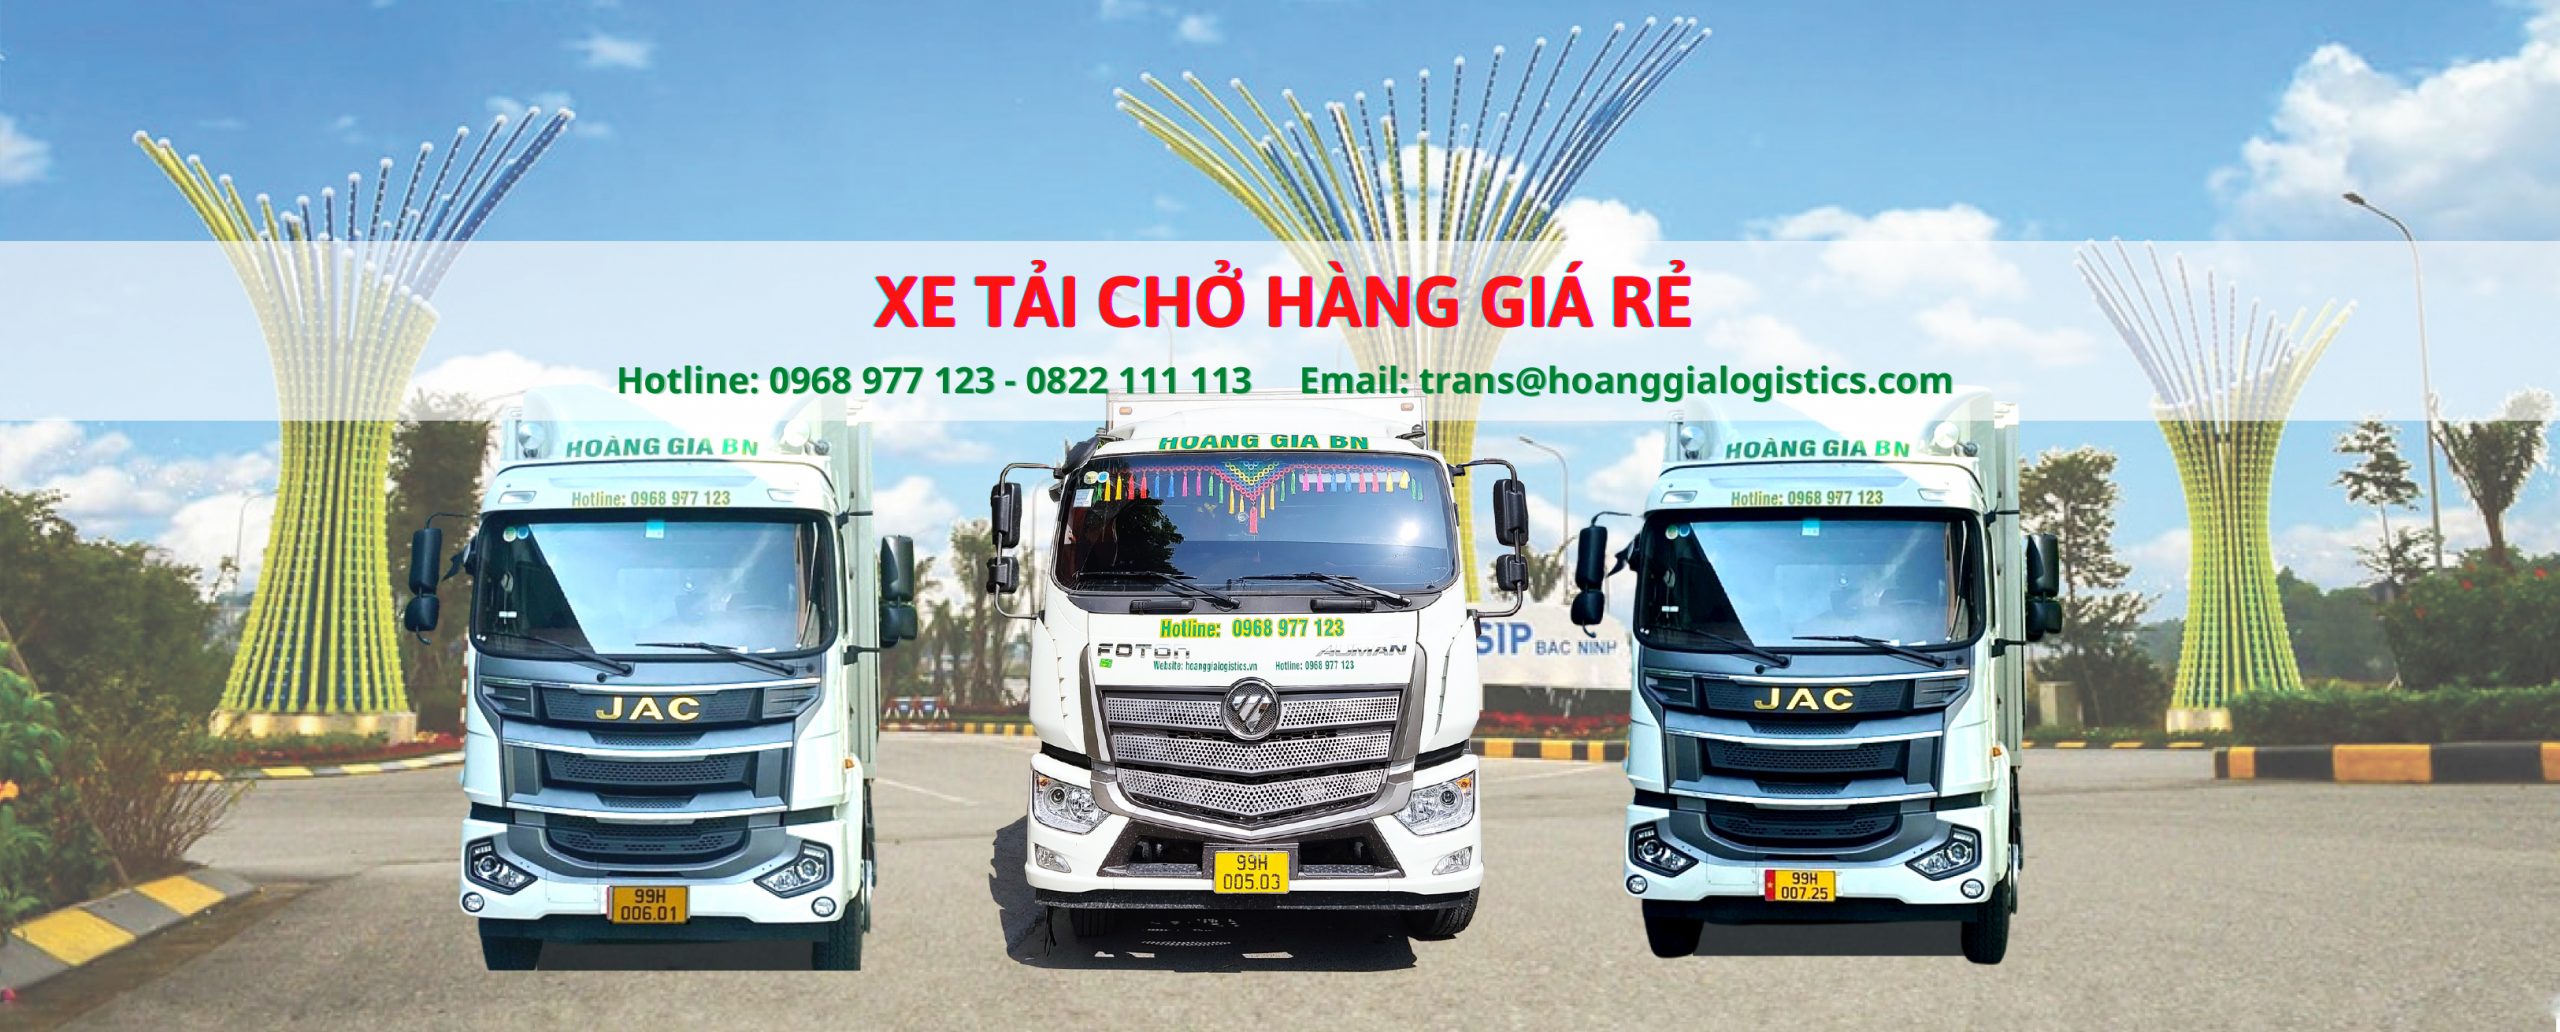 Hoàng Gia BN cung cấp dịch vụ xe tải chở hàng giá rẻ